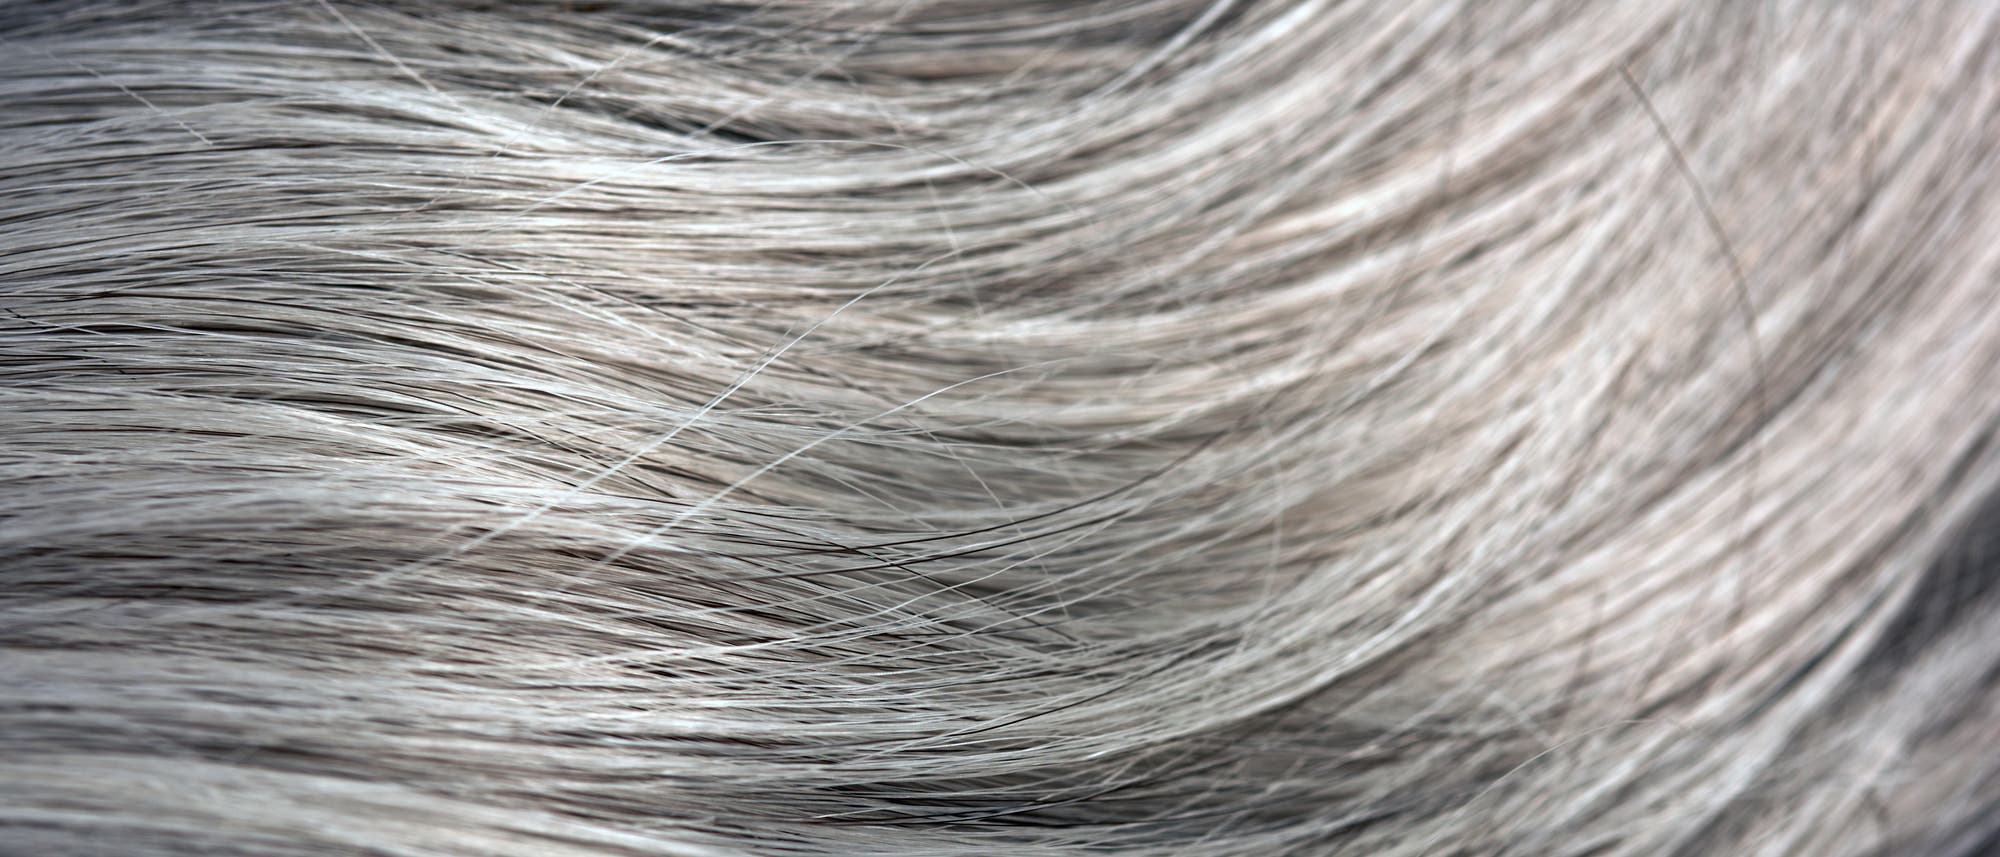 Schwarze haare mit grauen strähnen